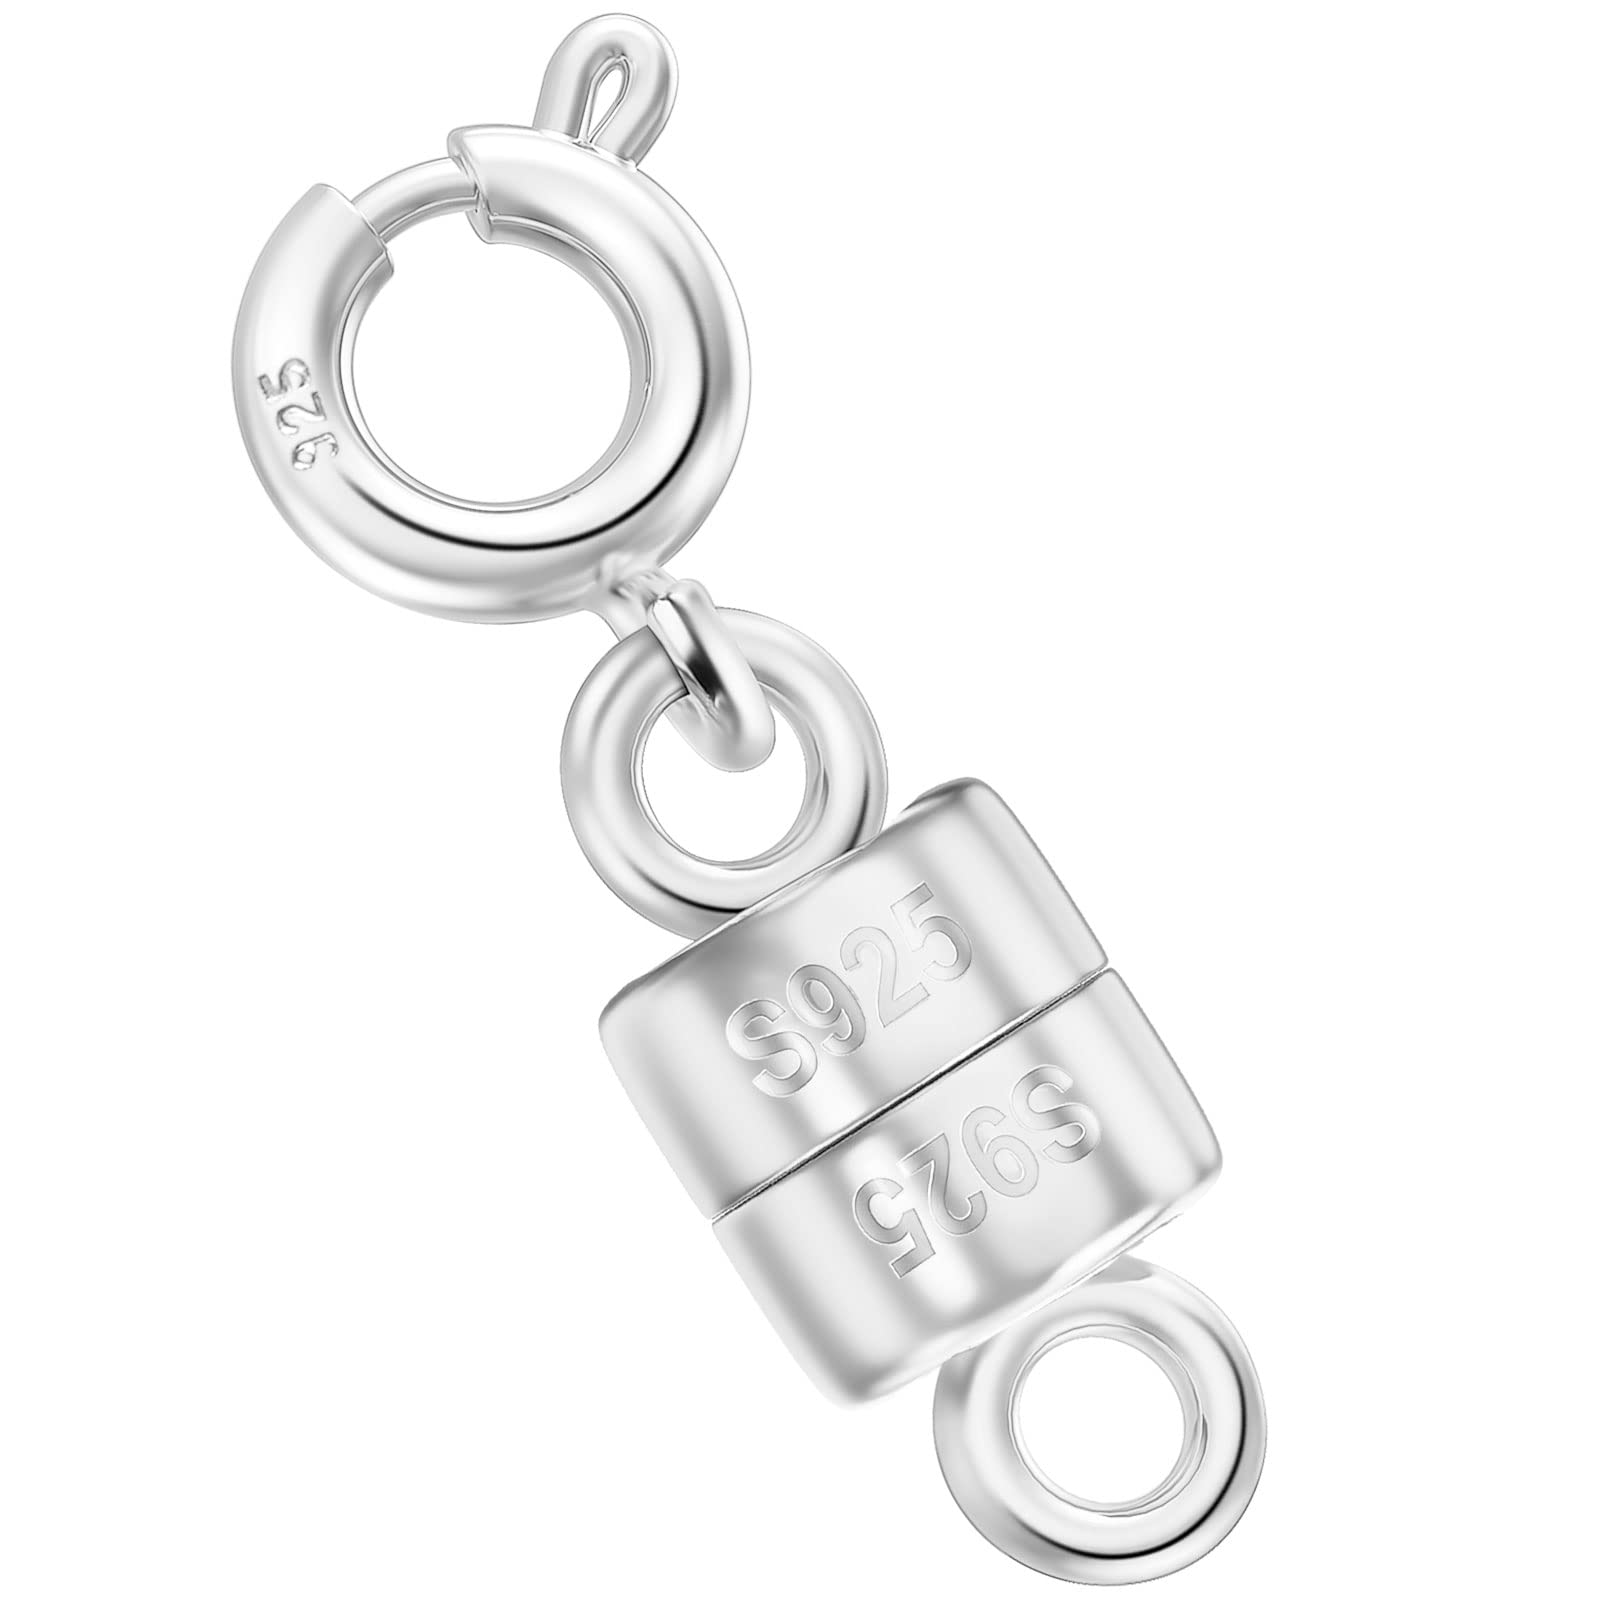 Gold Strong Magnetic Converter Necklace Bracelet Easy Clasp Connector K8 UK  Shop | eBay